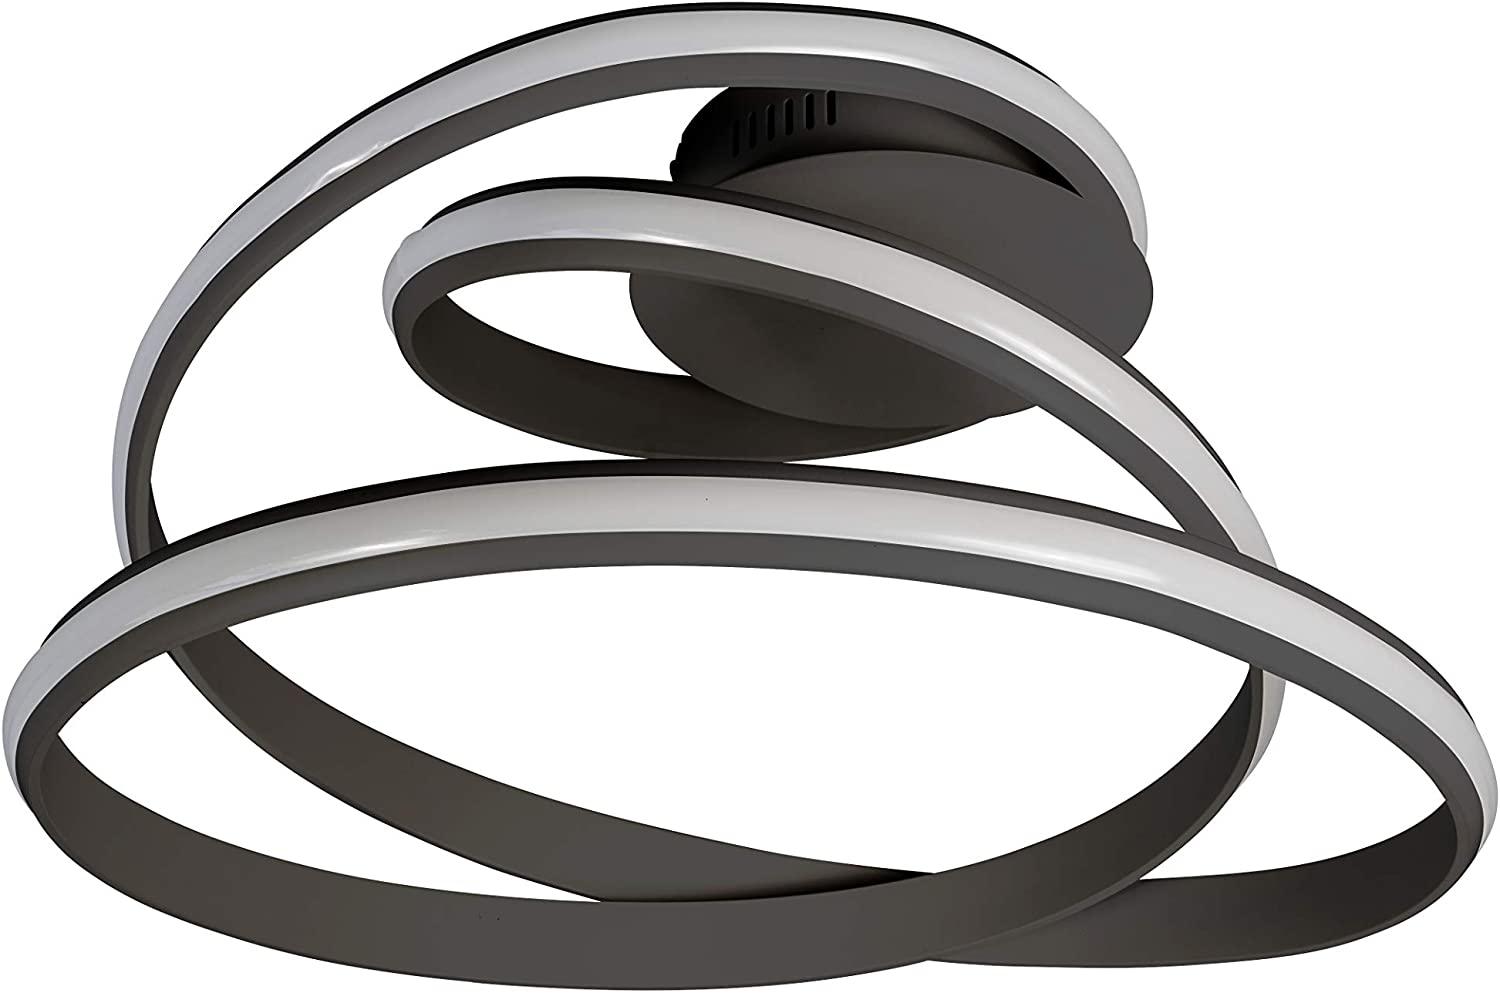 LED Deckenlampe schwarz, Ring Design, 3 Stufen Dimmer, L 56 cm Bild 1